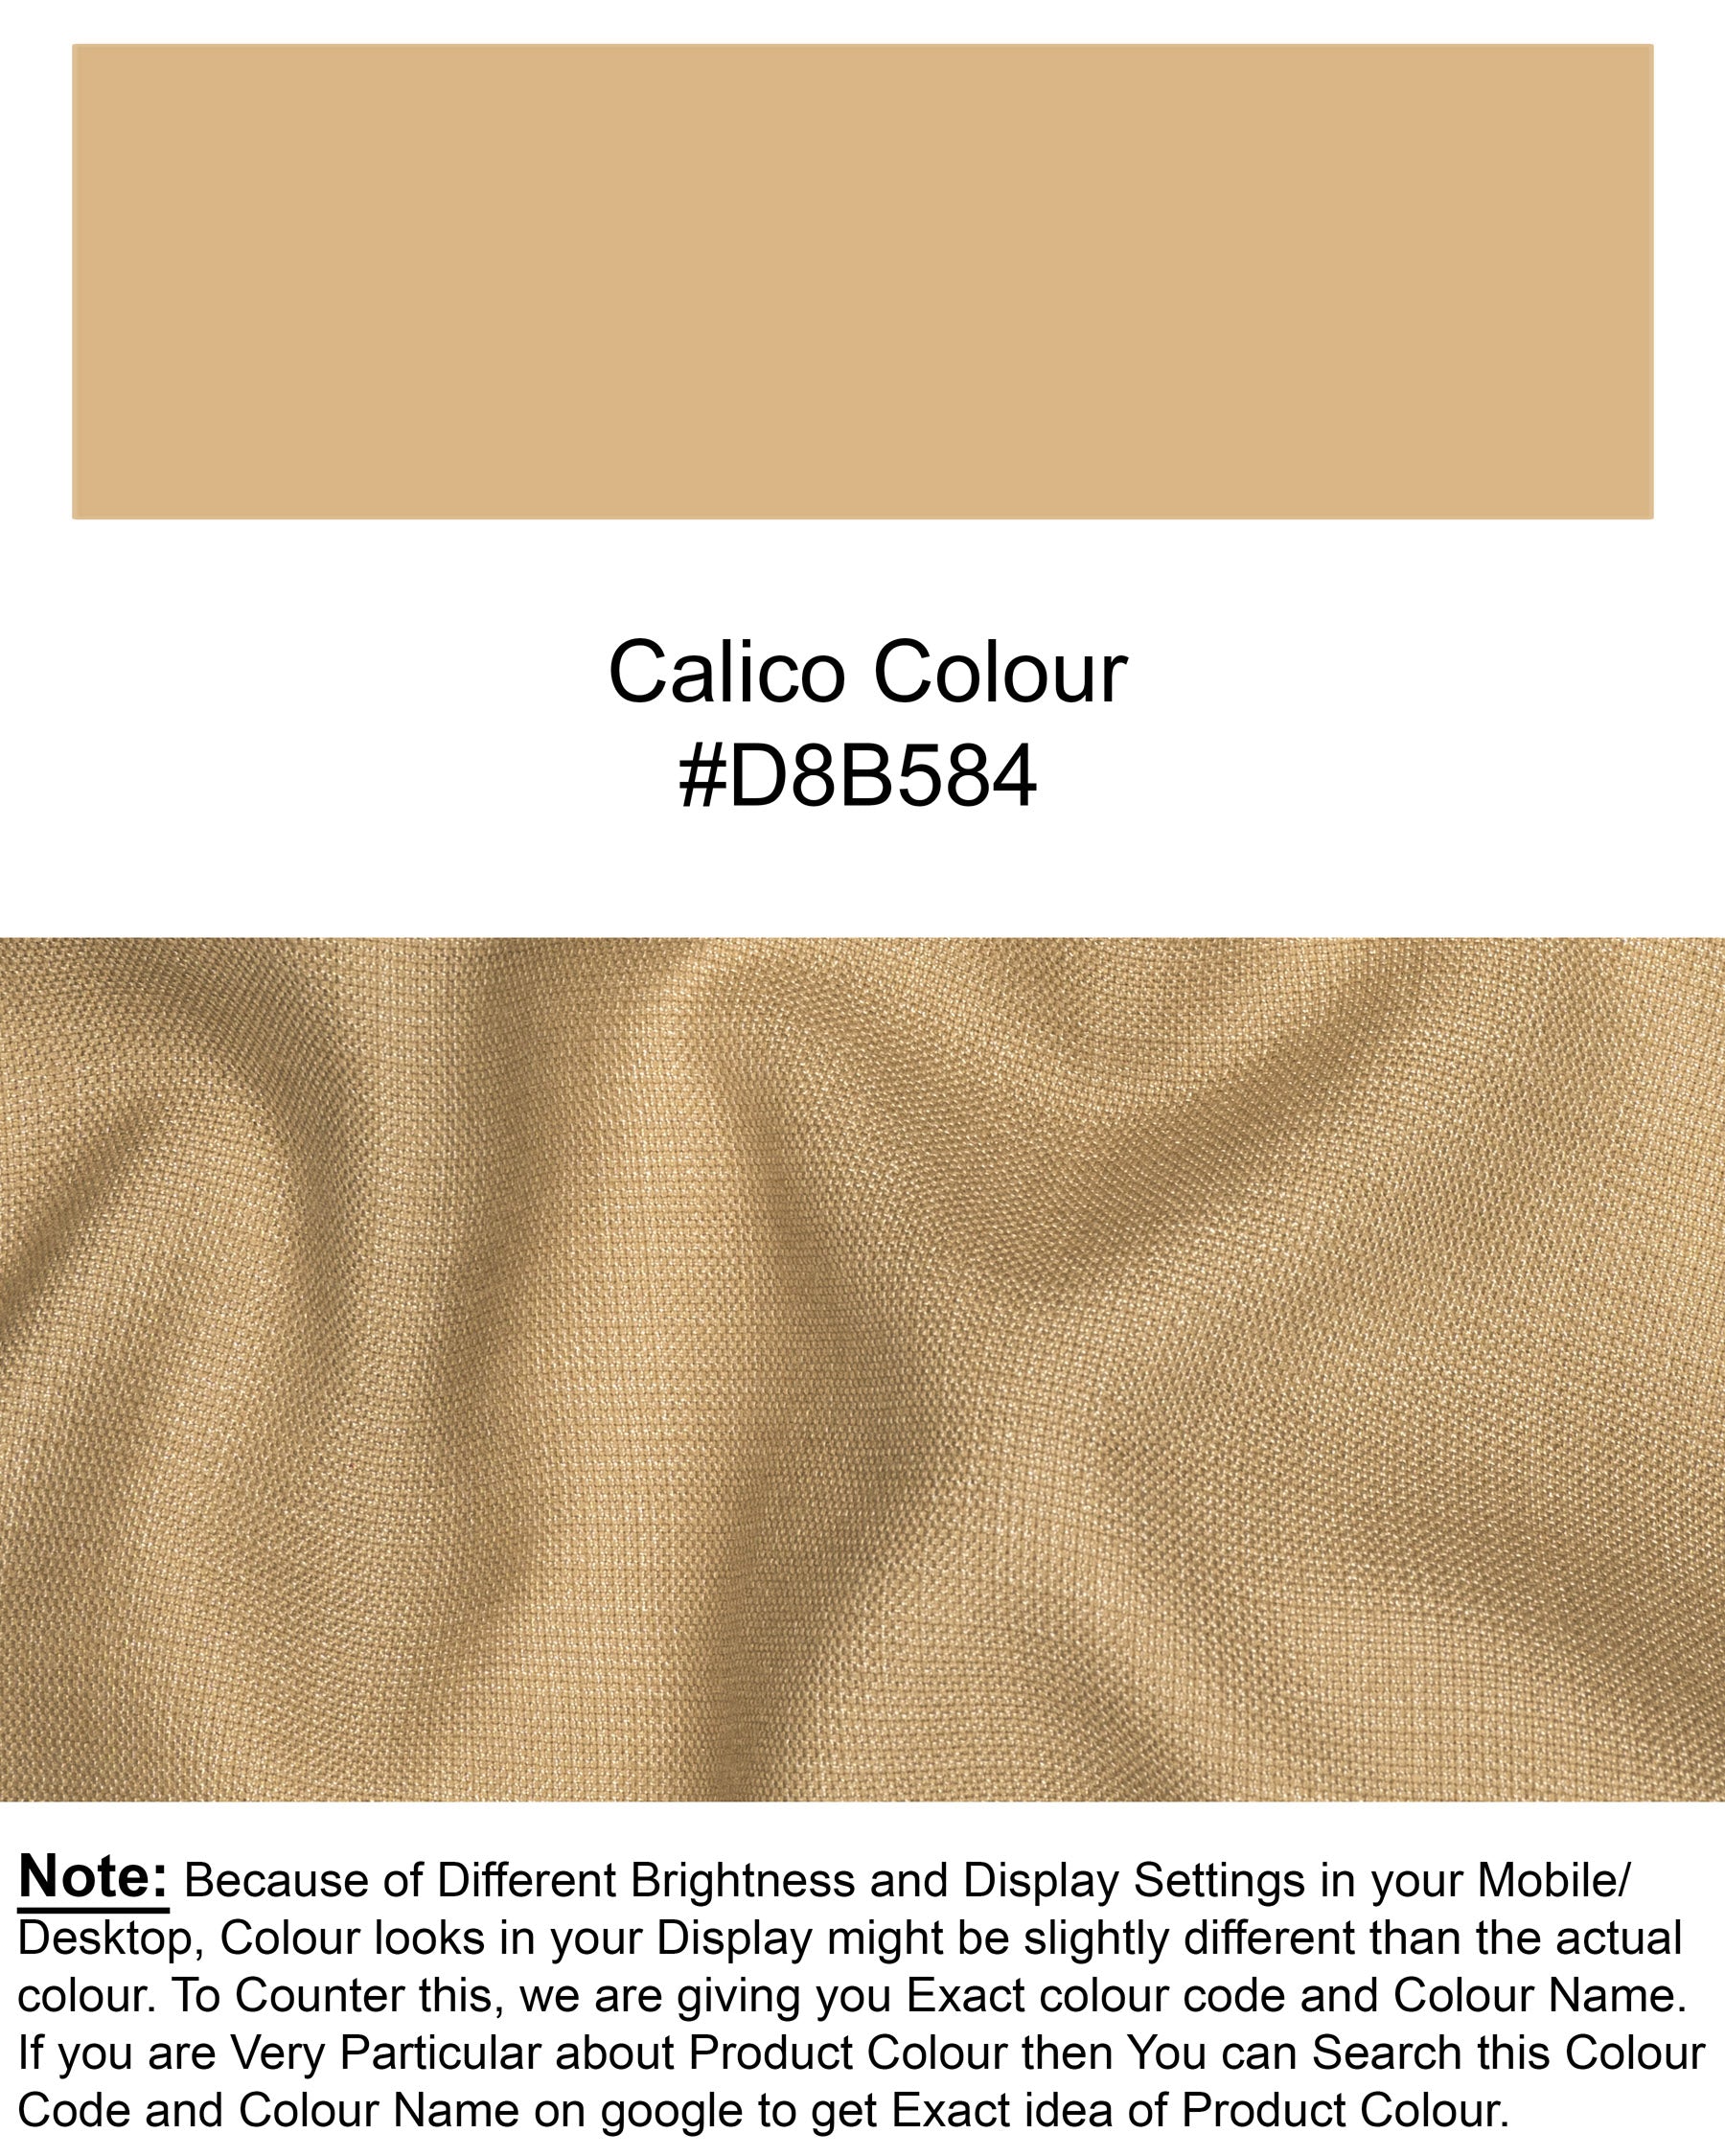 Calico Cream Patch Pockets Sports Suit ST1466-D3-36,ST1466-D3-38,ST1466-D3-40,ST1466-D3-42,ST1466-D3-44,ST1466-D3-46,ST1466-D3-48,ST1466-D3-50,ST1466-D3-52,ST1466-D3-54,ST1466-D3-56,ST1466-D3-58,ST1466-D3-60